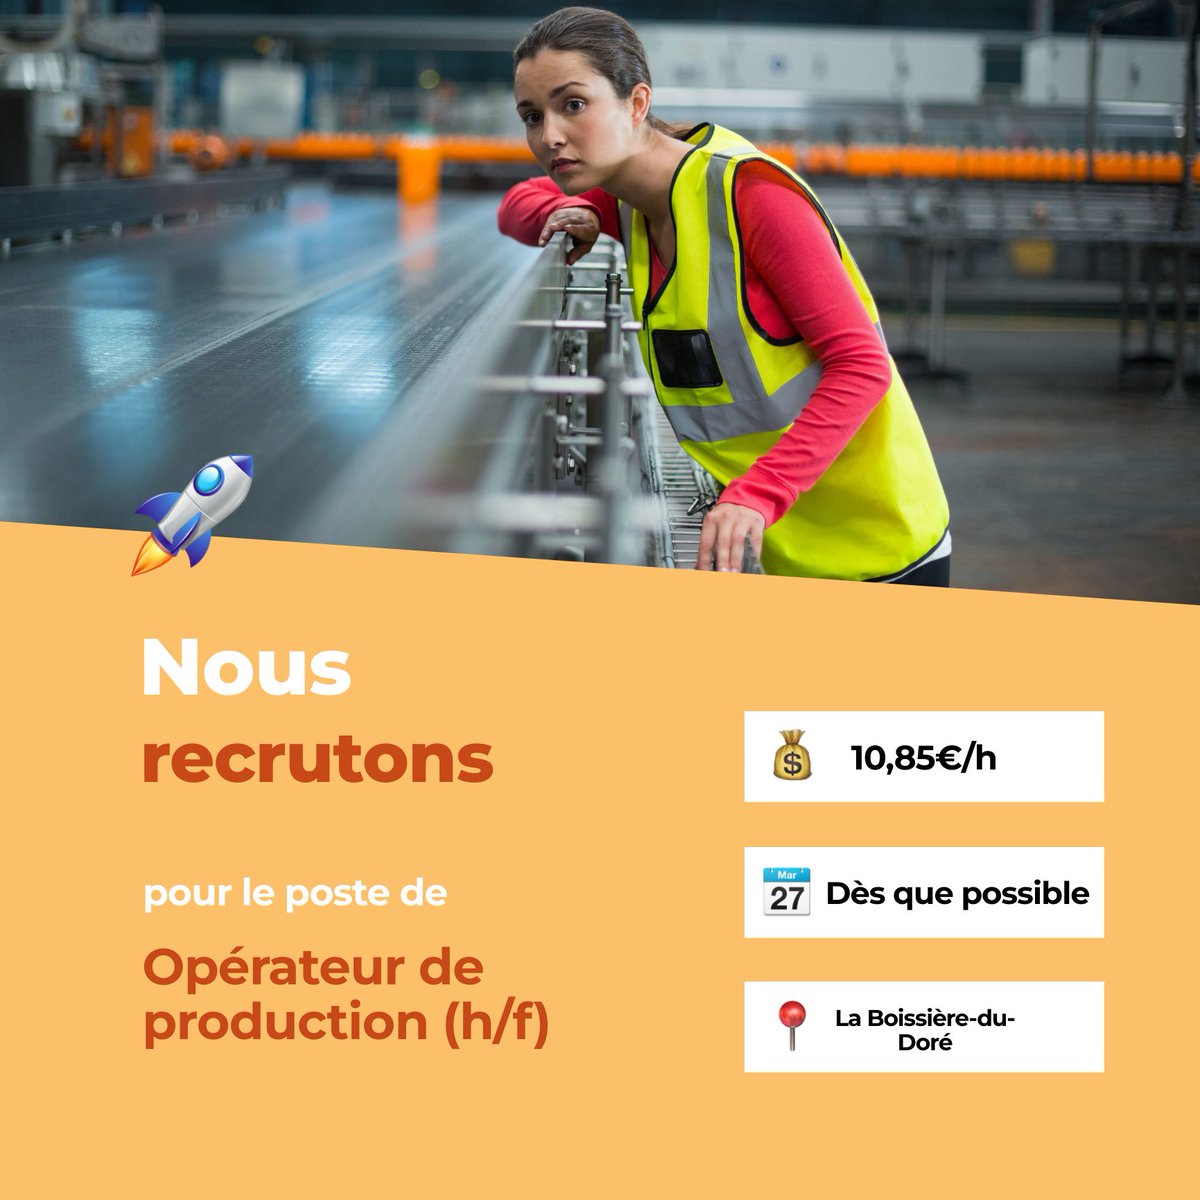 test Twitter Media - 🛎️ Nouvelle offre d'emploi : Opérateur de production (h/f)
🌎 La Boissière-du-Doré (44430)
📅 Démarrage dans les 7 prochains jours
👉 Plus d'infos : https://t.co/MVA7smFIqd
#recrutement #intérim #emploi #OffreEmploi #job #iziwork https://t.co/2YOxCefaeO